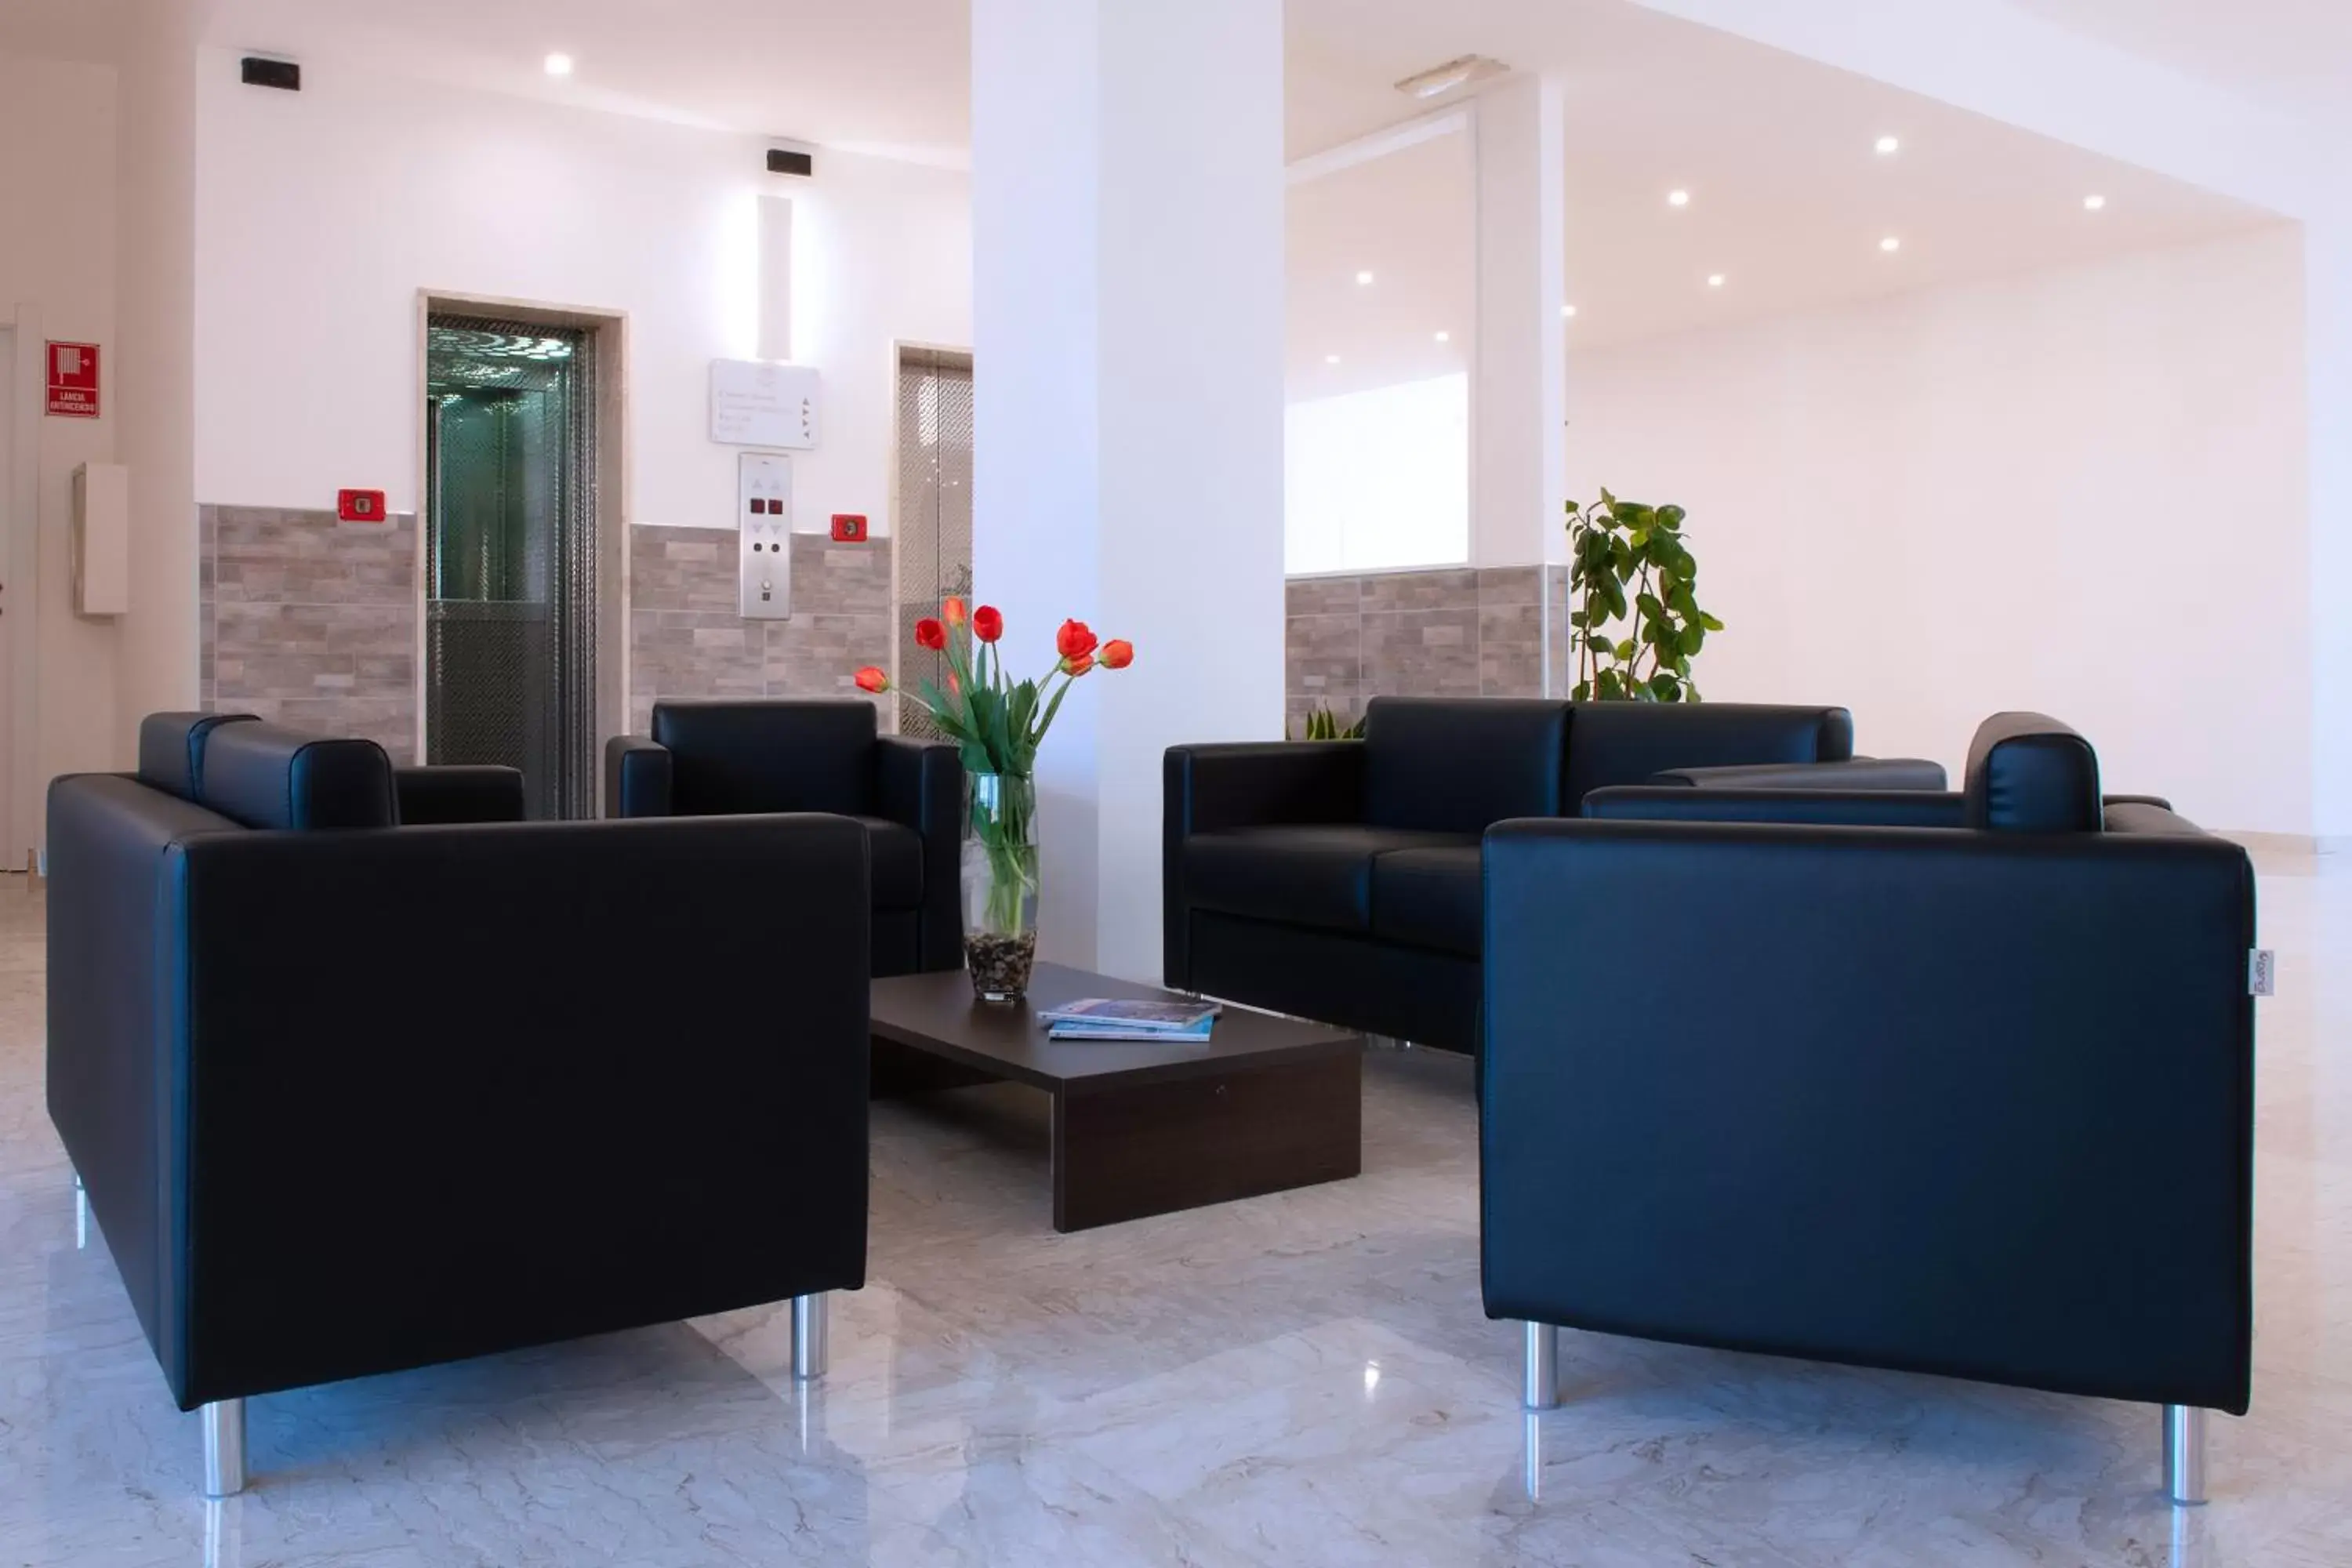 Lobby or reception, Lobby/Reception in CDH Hotel Modena